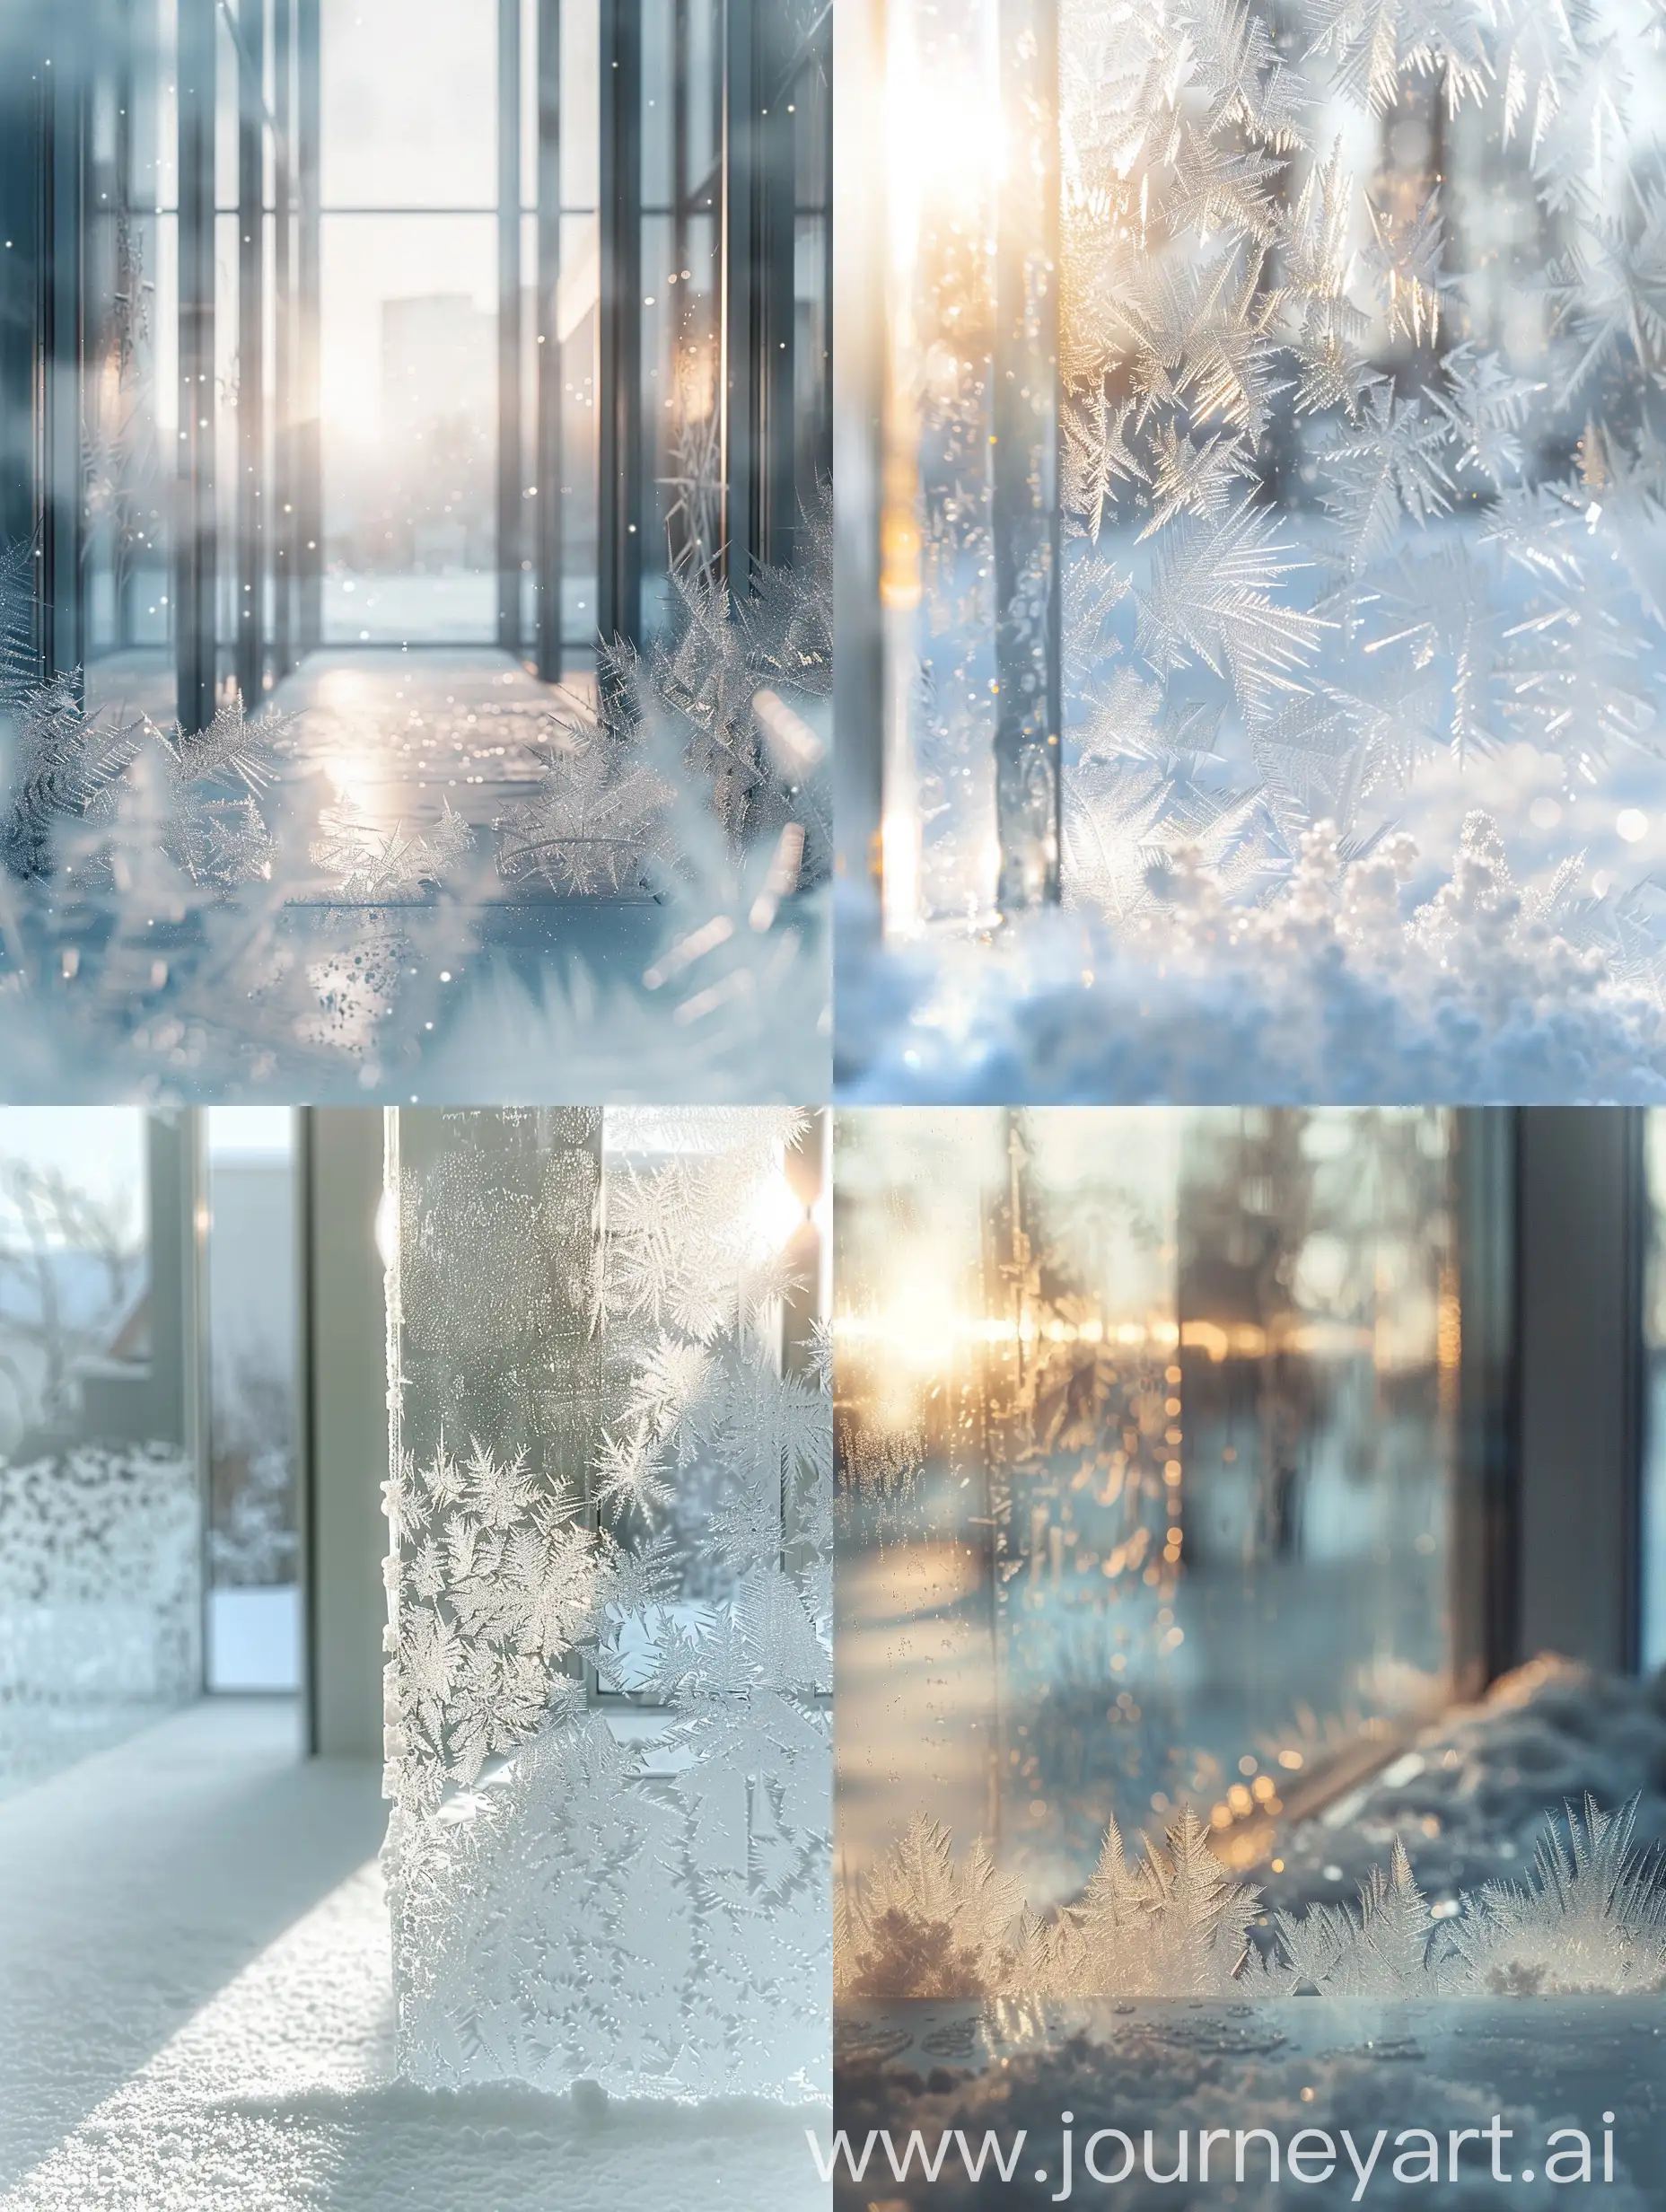 рекламная стилистика, спереди прозрачное стекло во всё изображение, спереди на стекле морозные узоры, иней по краям, посередине стекло прозрачное, блики, свет  спереди слева, морозное настроение